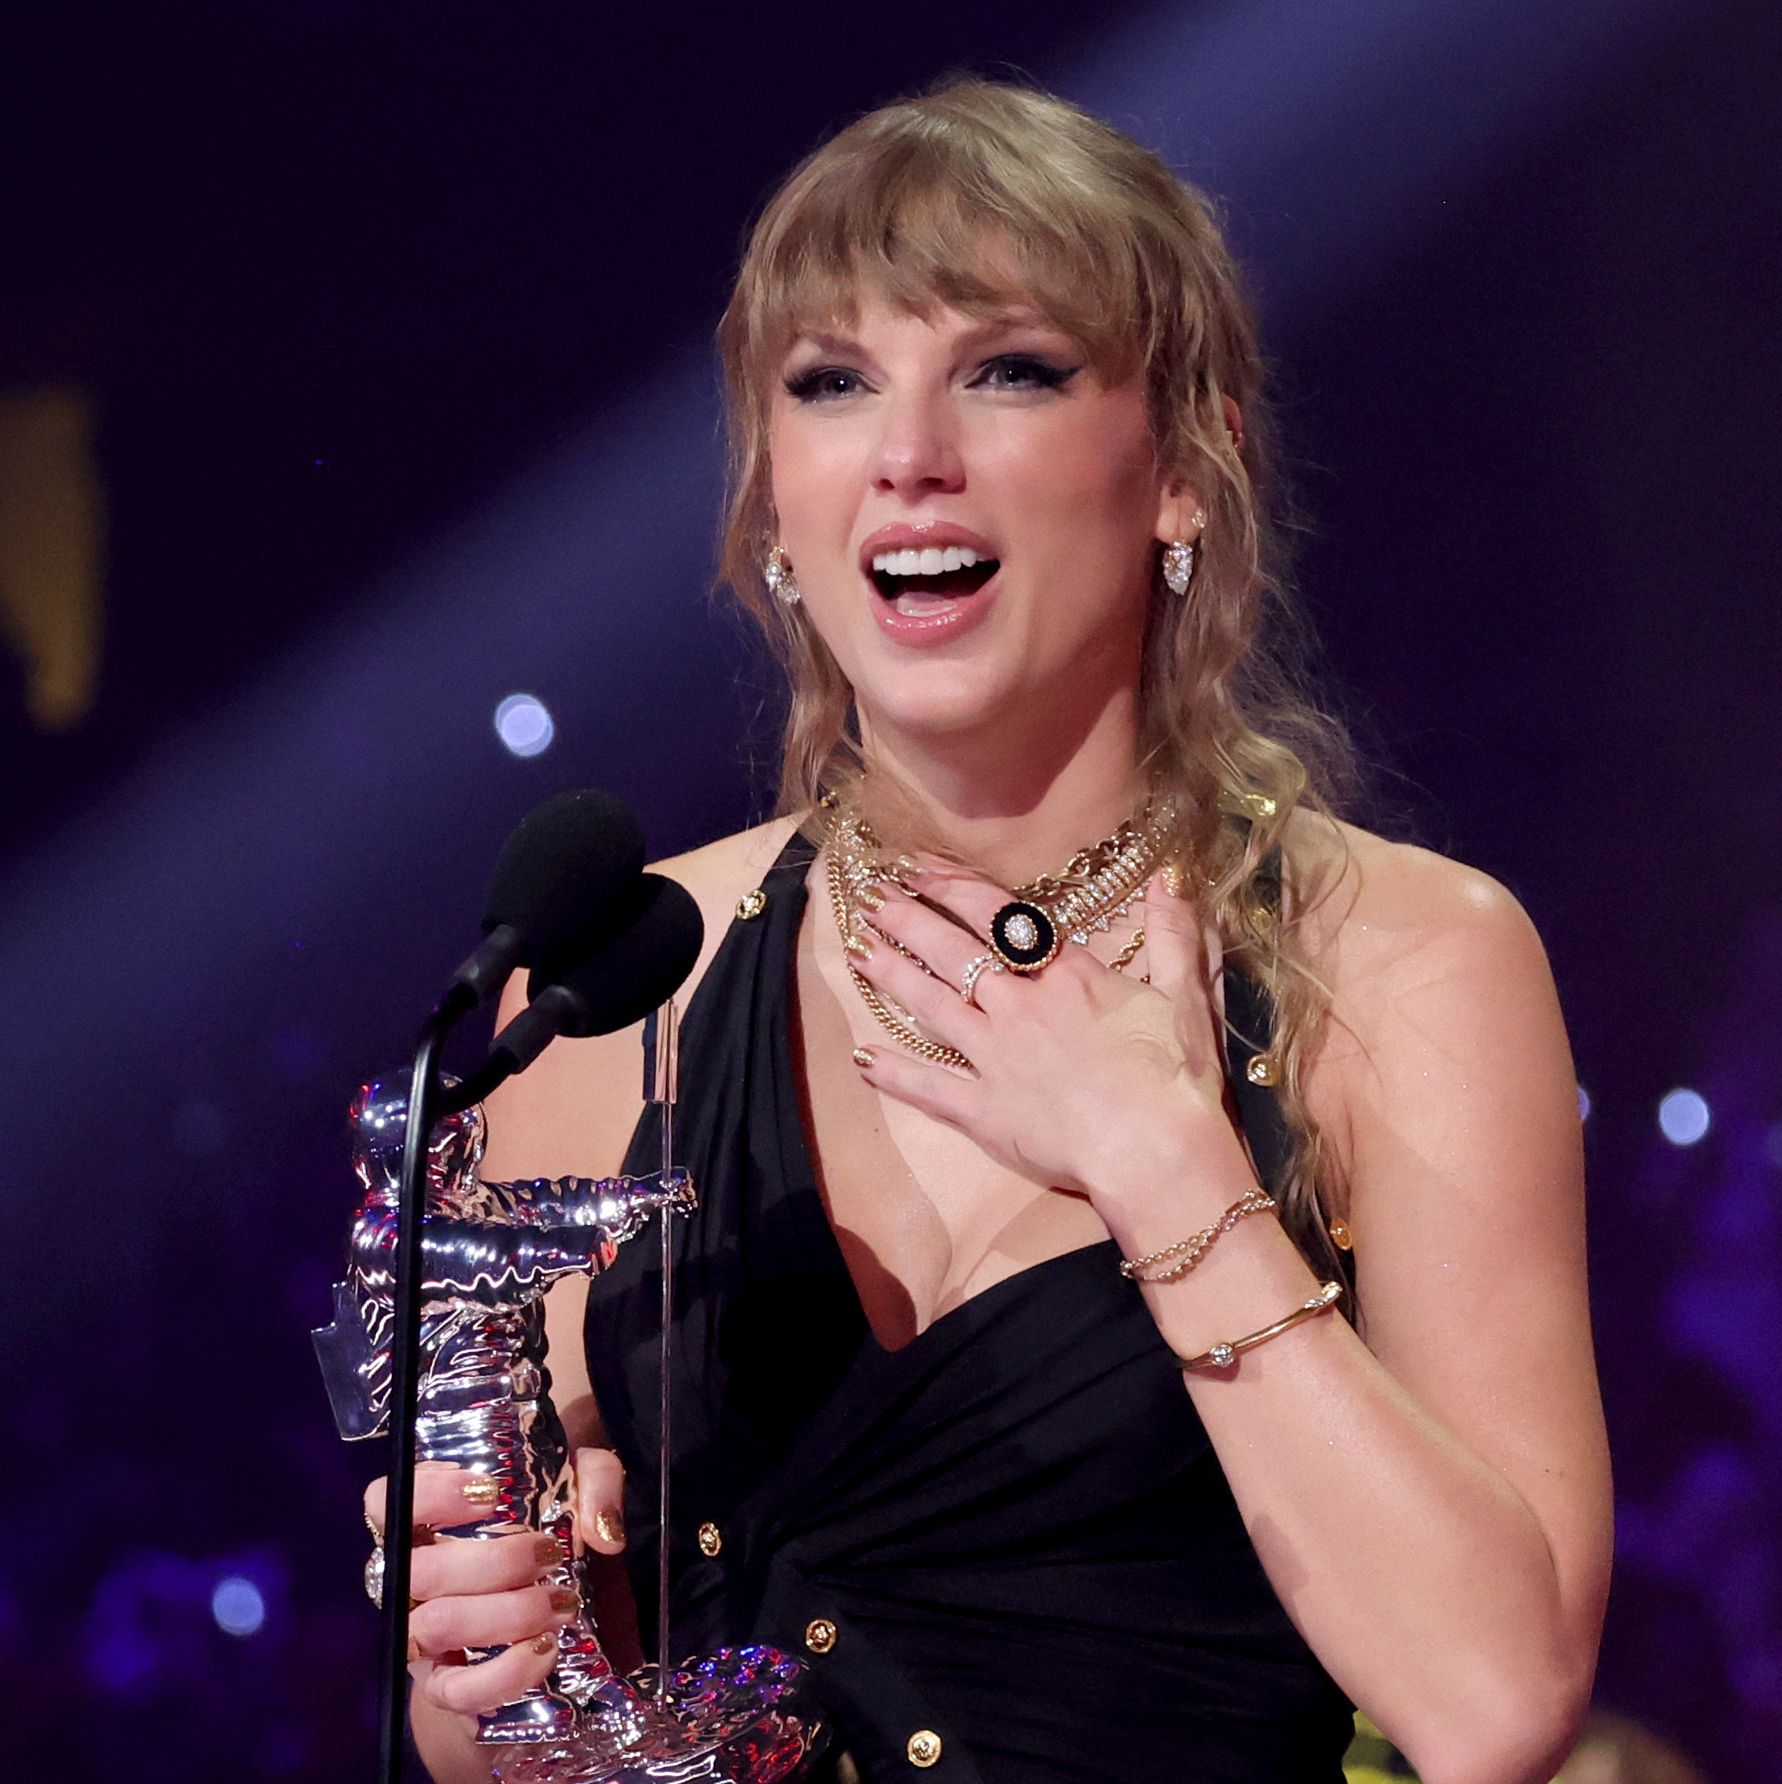 Taylor Swift Broke Her $12,000 Ring at the VMAs Last Night